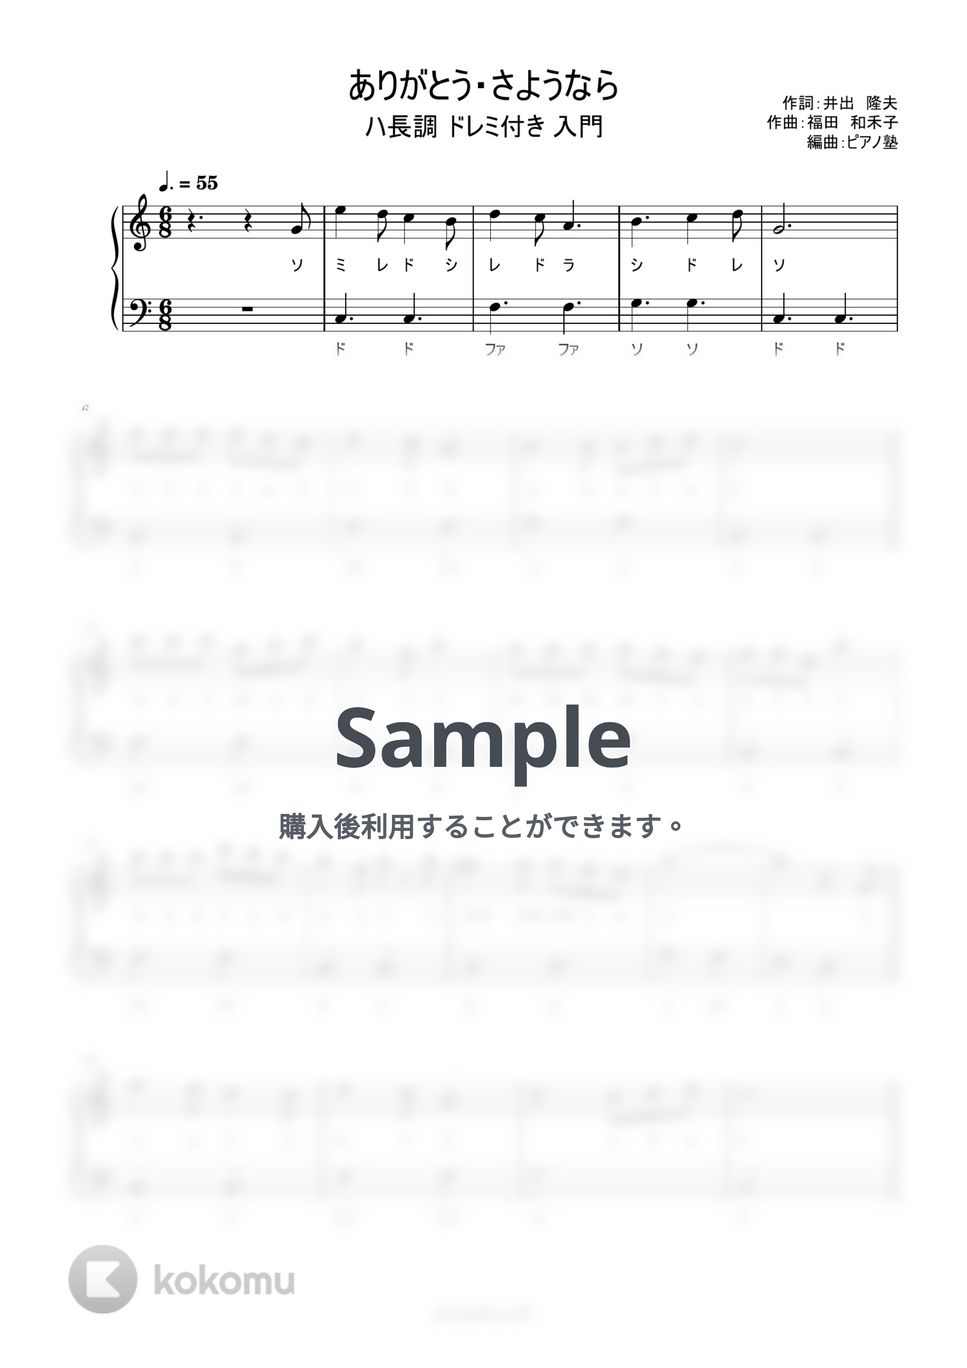 ありがとう・さようなら (ドレミ付き/簡単楽譜) by ピアノ塾